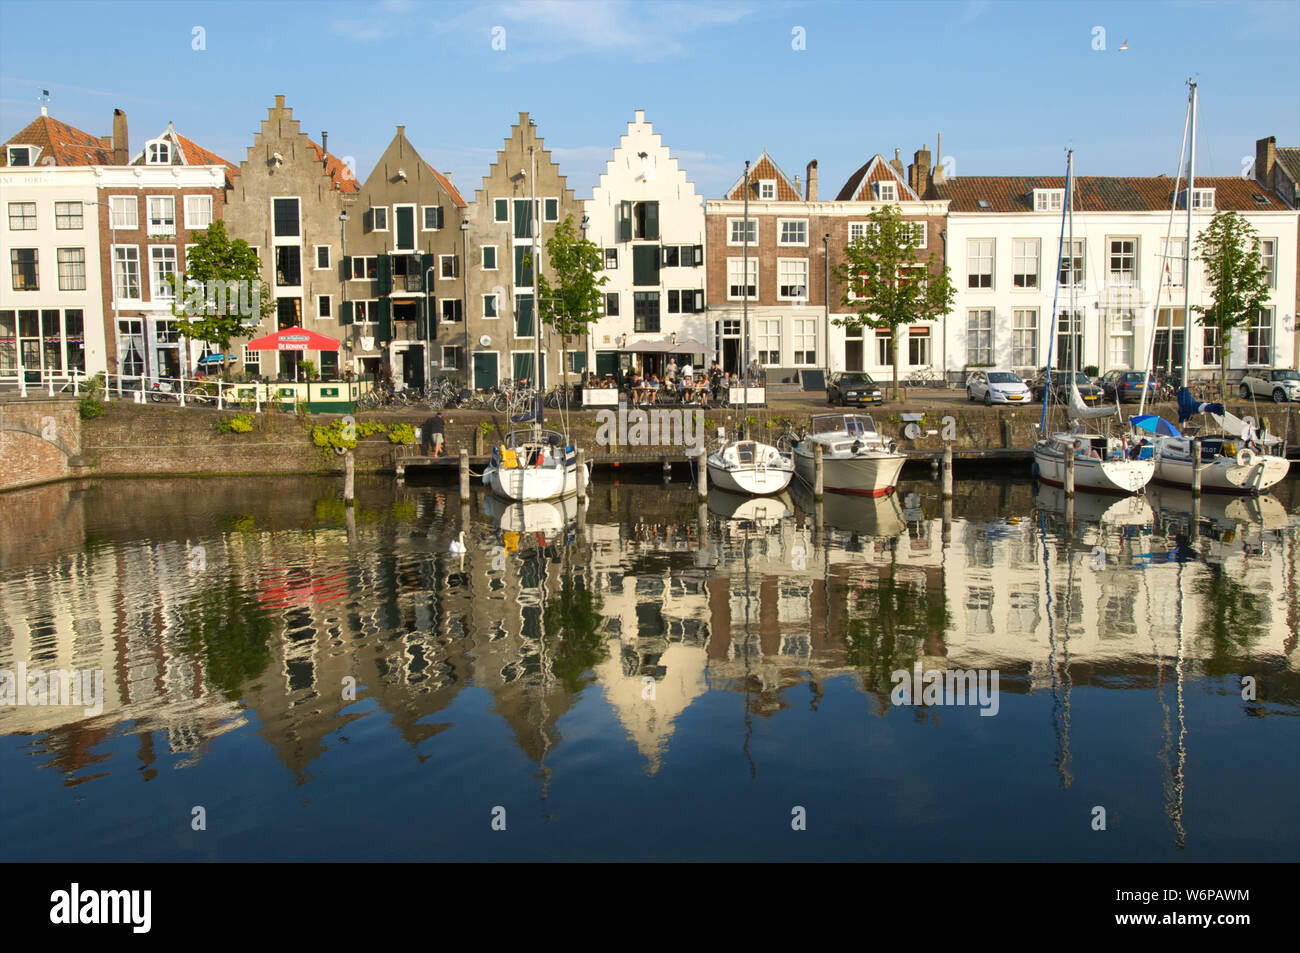 Il Kinderdijk e la Spijker ponte con edifici storici nella città di Middelburg, Paesi Bassi Foto Stock